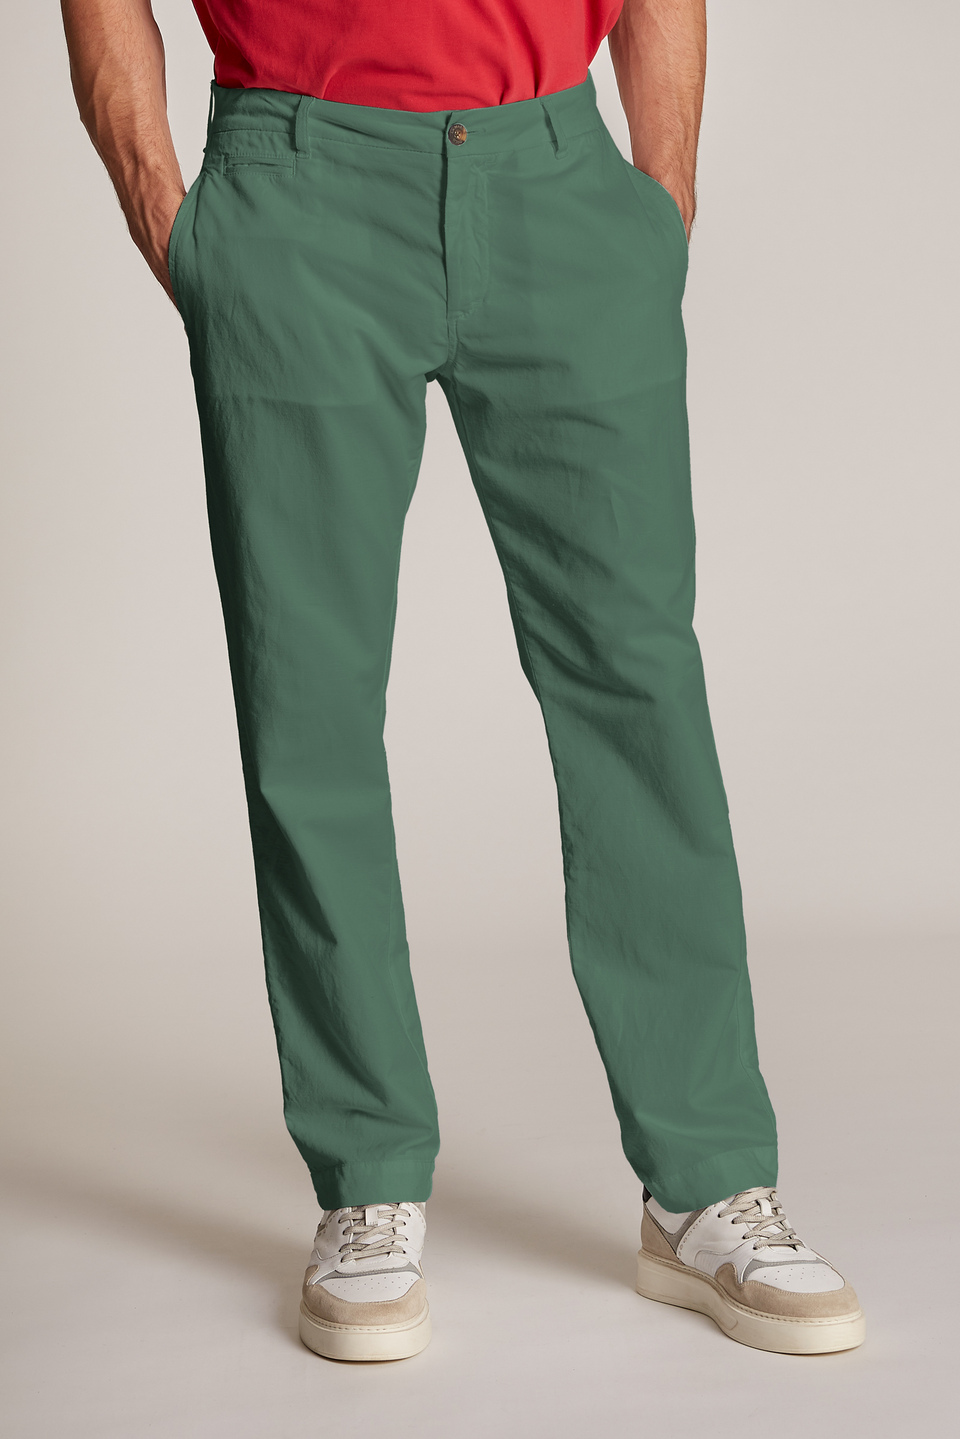 Pendeen Linen Blend Trousers, Pants & Leggings | FatFace.com